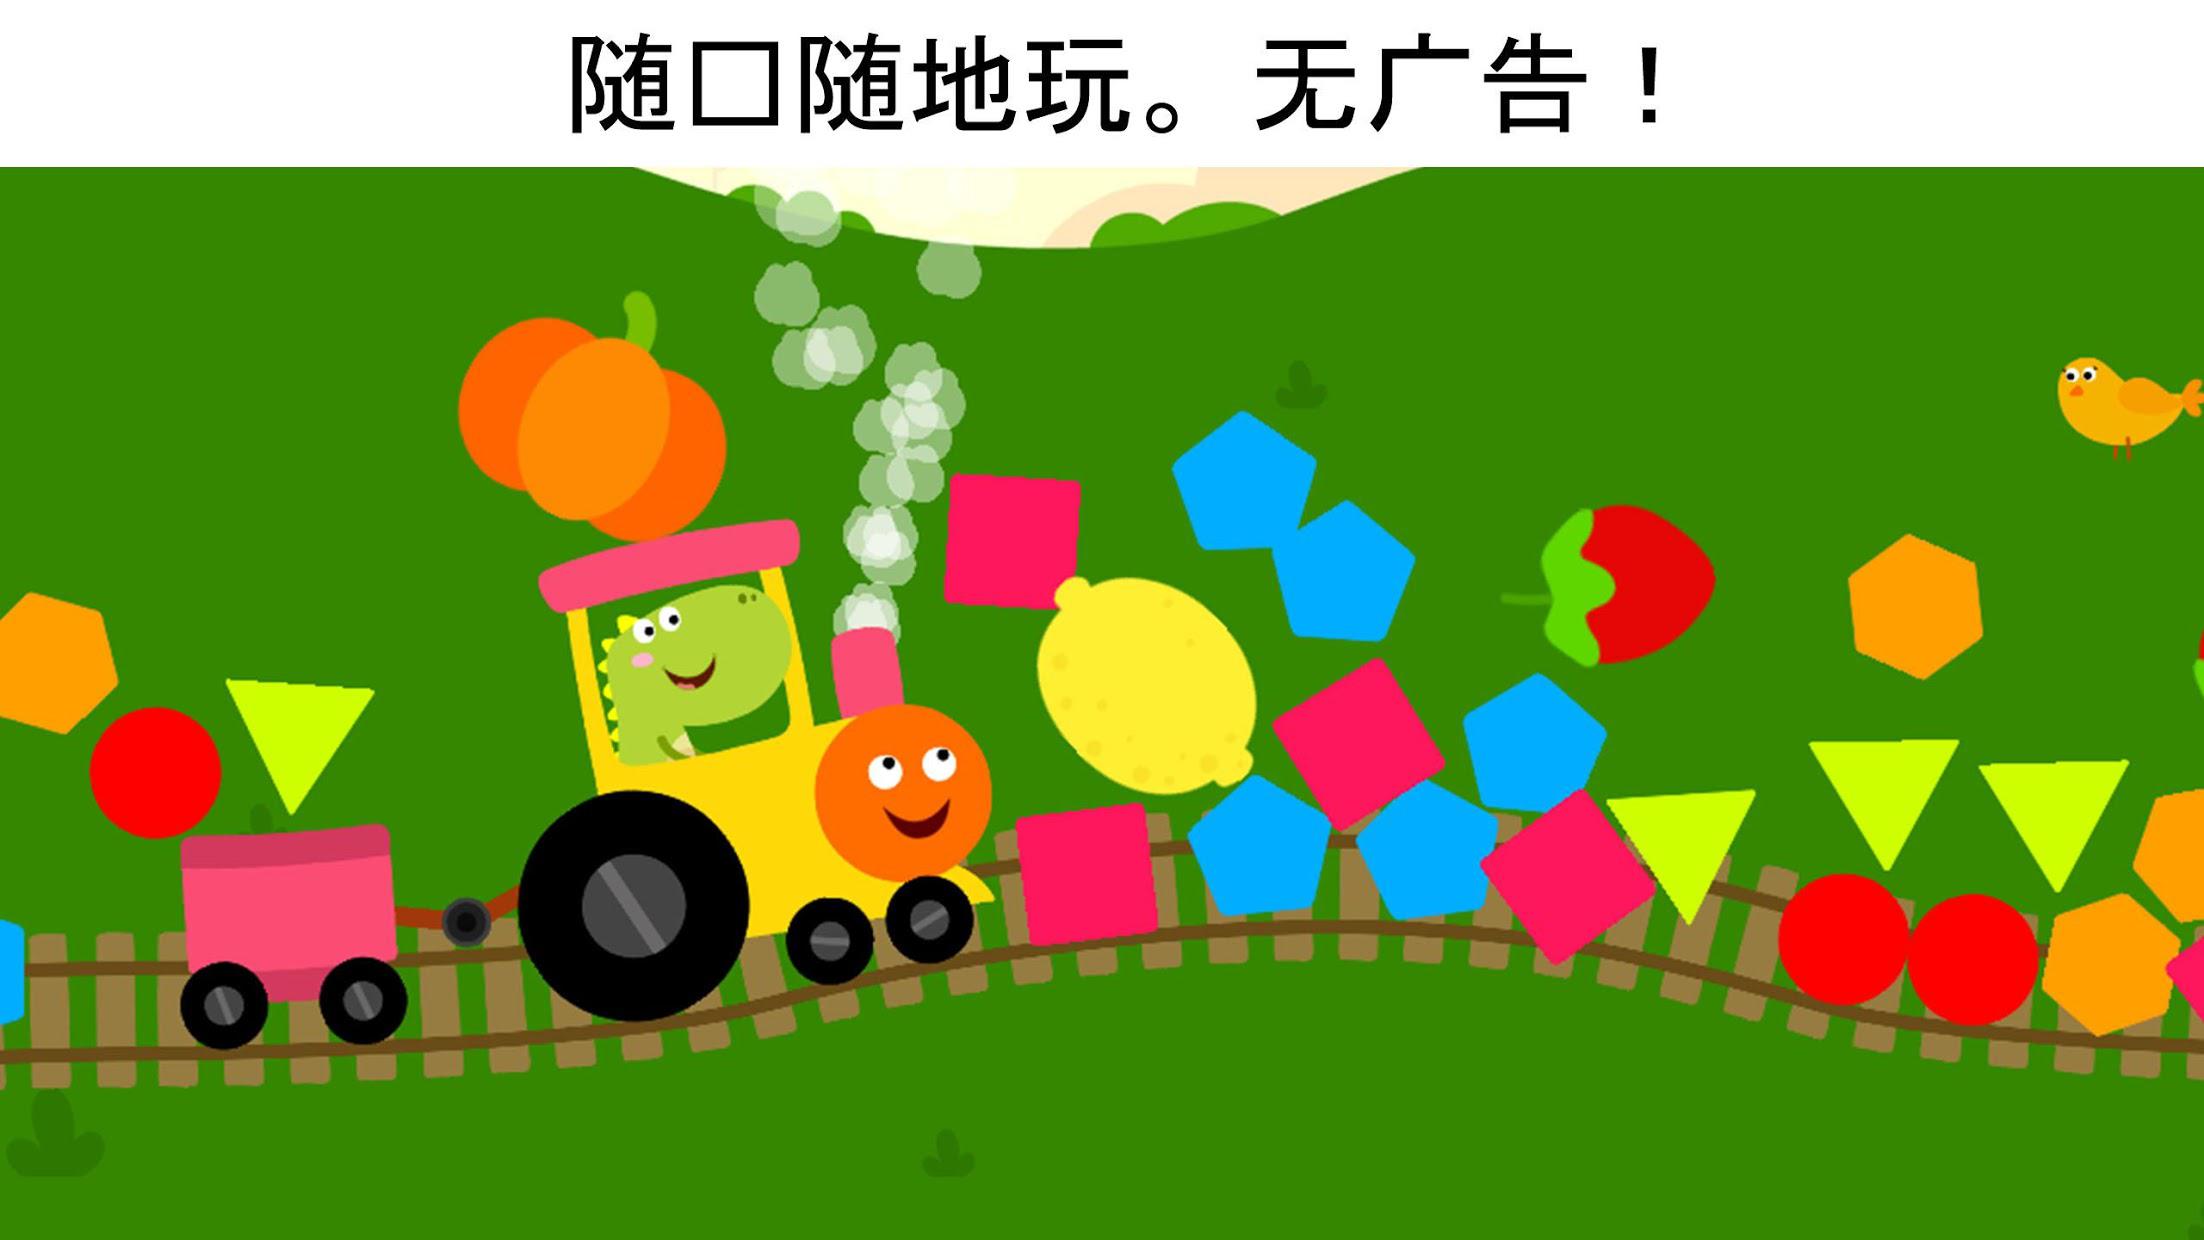 龙火车游戏--为小孩和学步儿童设计的龙游戏_截图_4